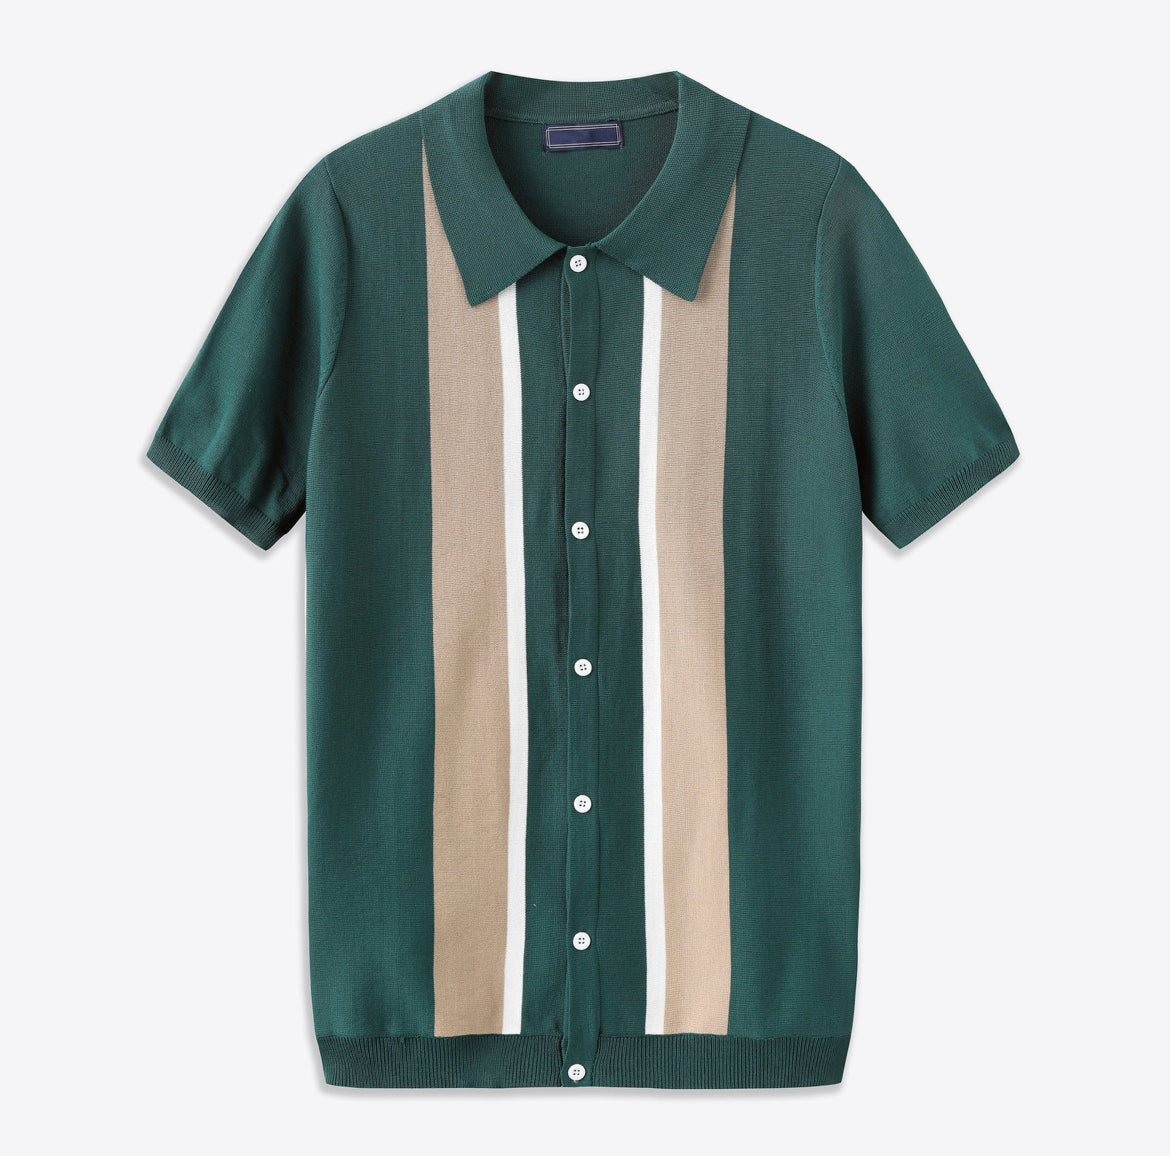 Short Sleeve Polo Shirt